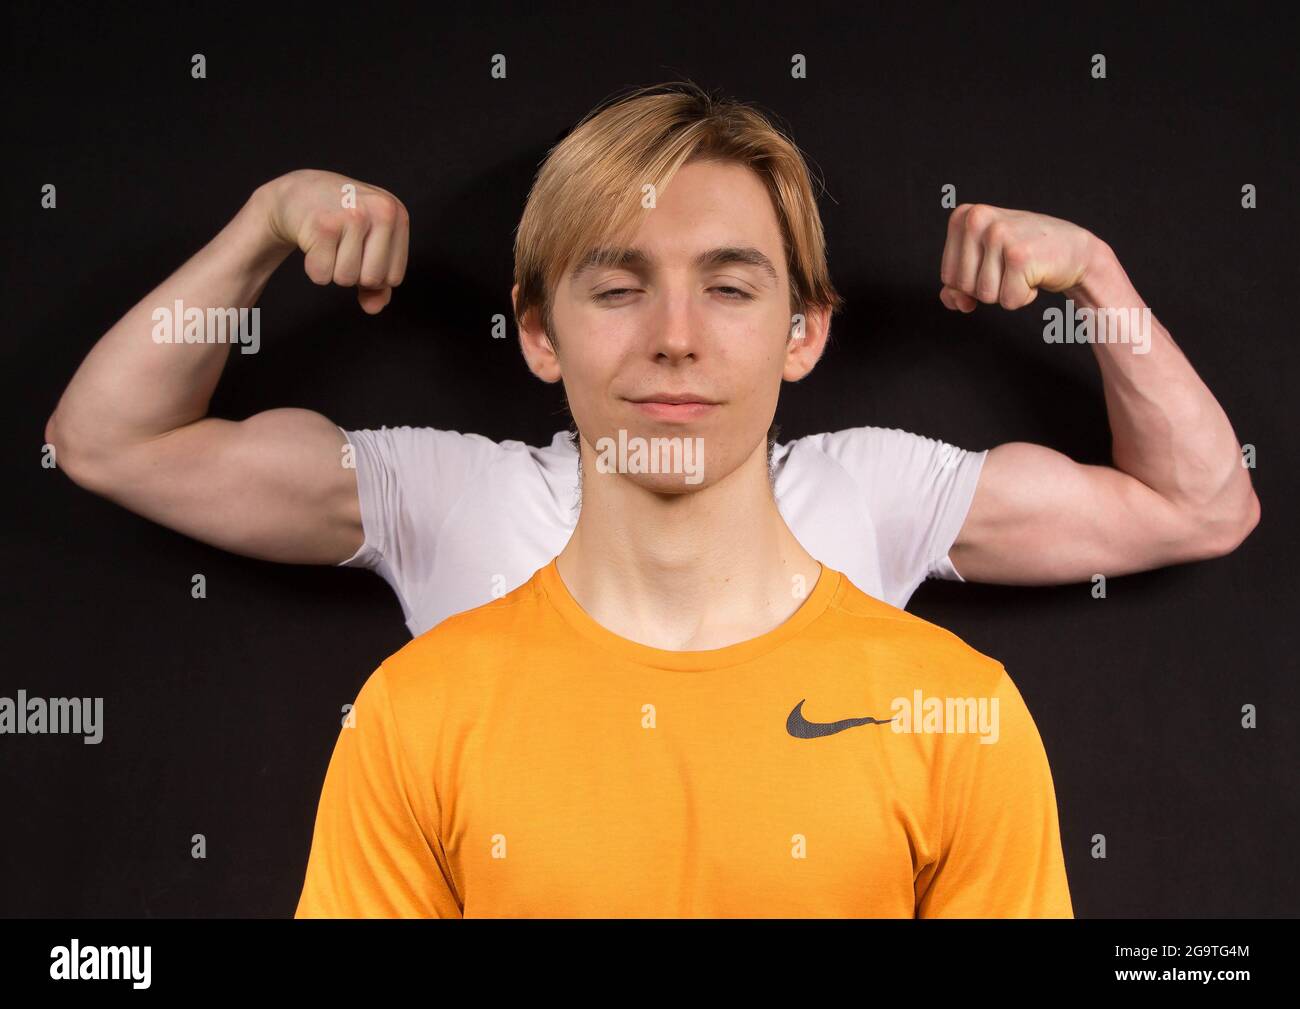 Ein männlicher Jugendlicher träumt davon, große muskulöse Arme zu haben, während ein anderer Jugendlicher seinen Bizeps hinter sich beugt Stockfoto